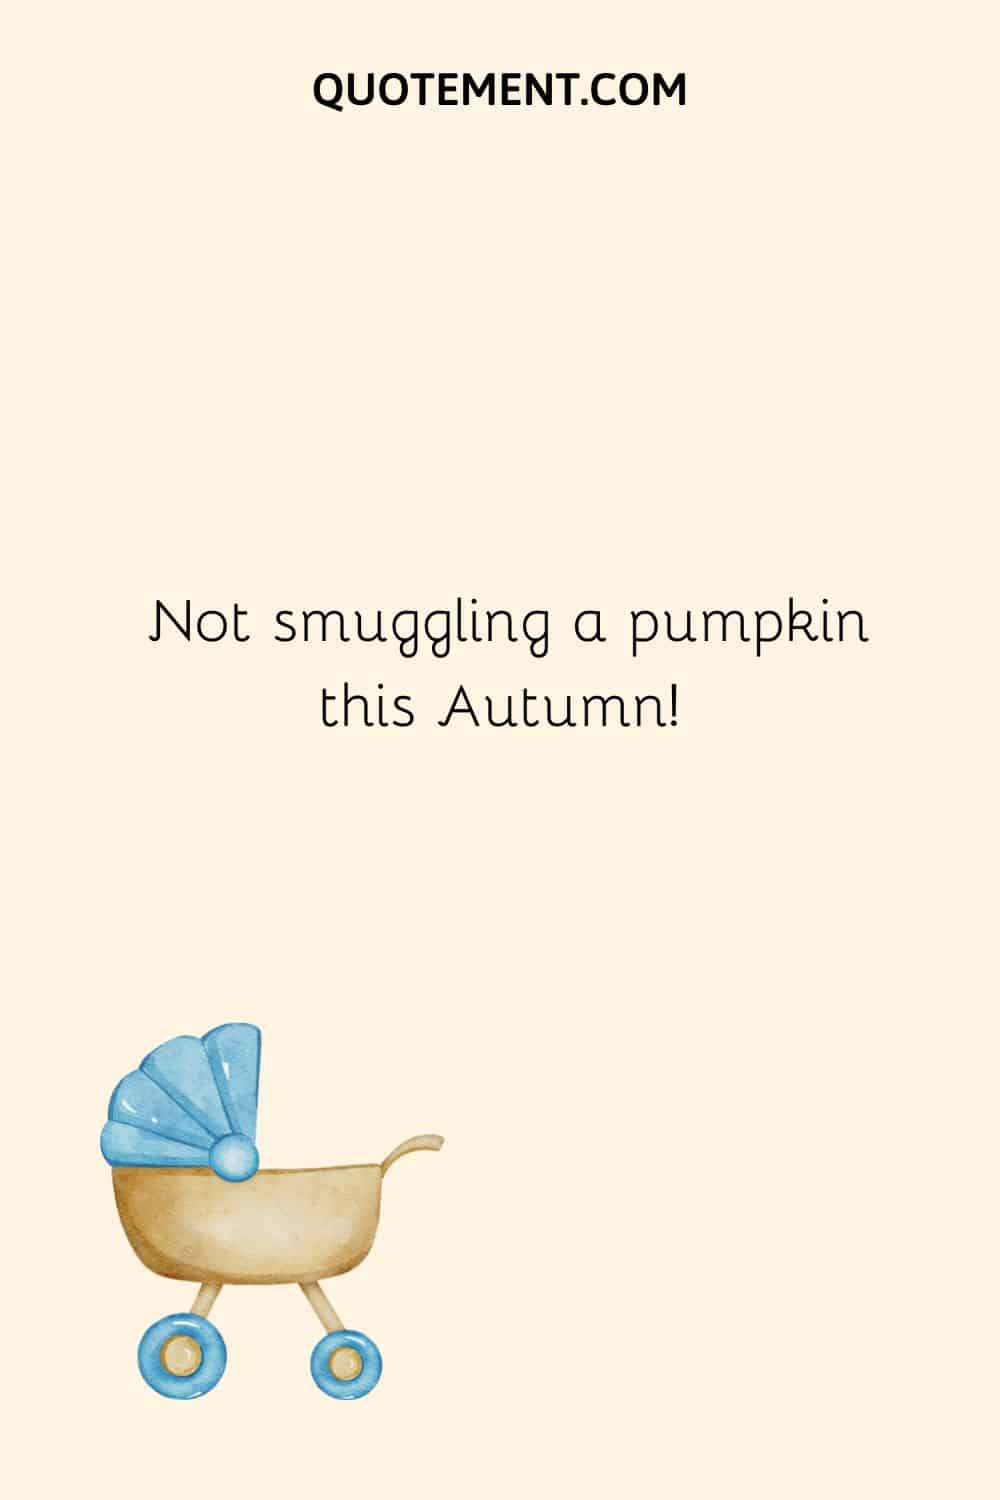 Not smuggling a pumpkin this Autumn!